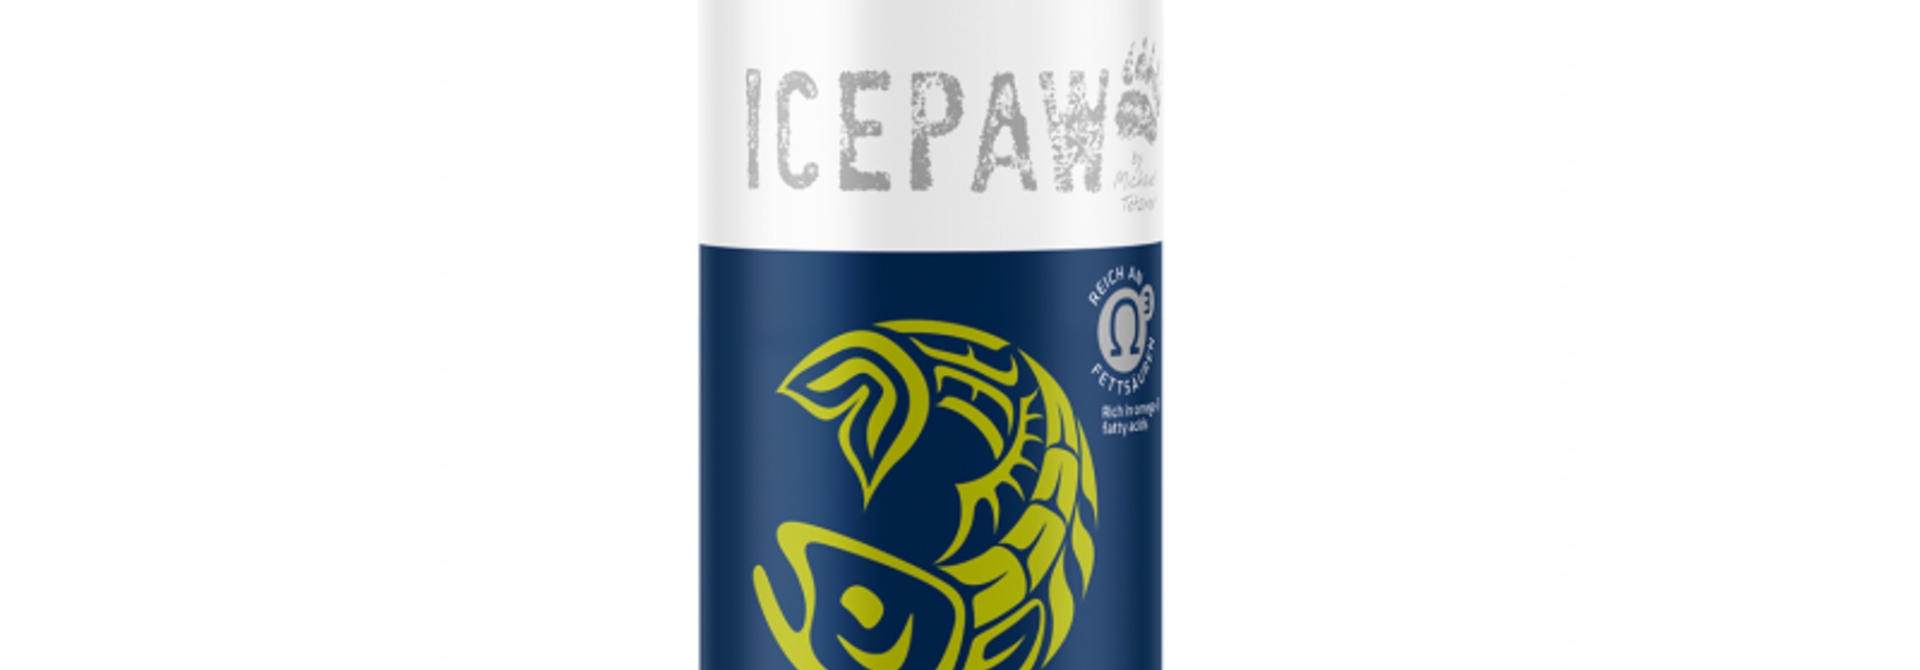 IcePaw Omega-3 Oil